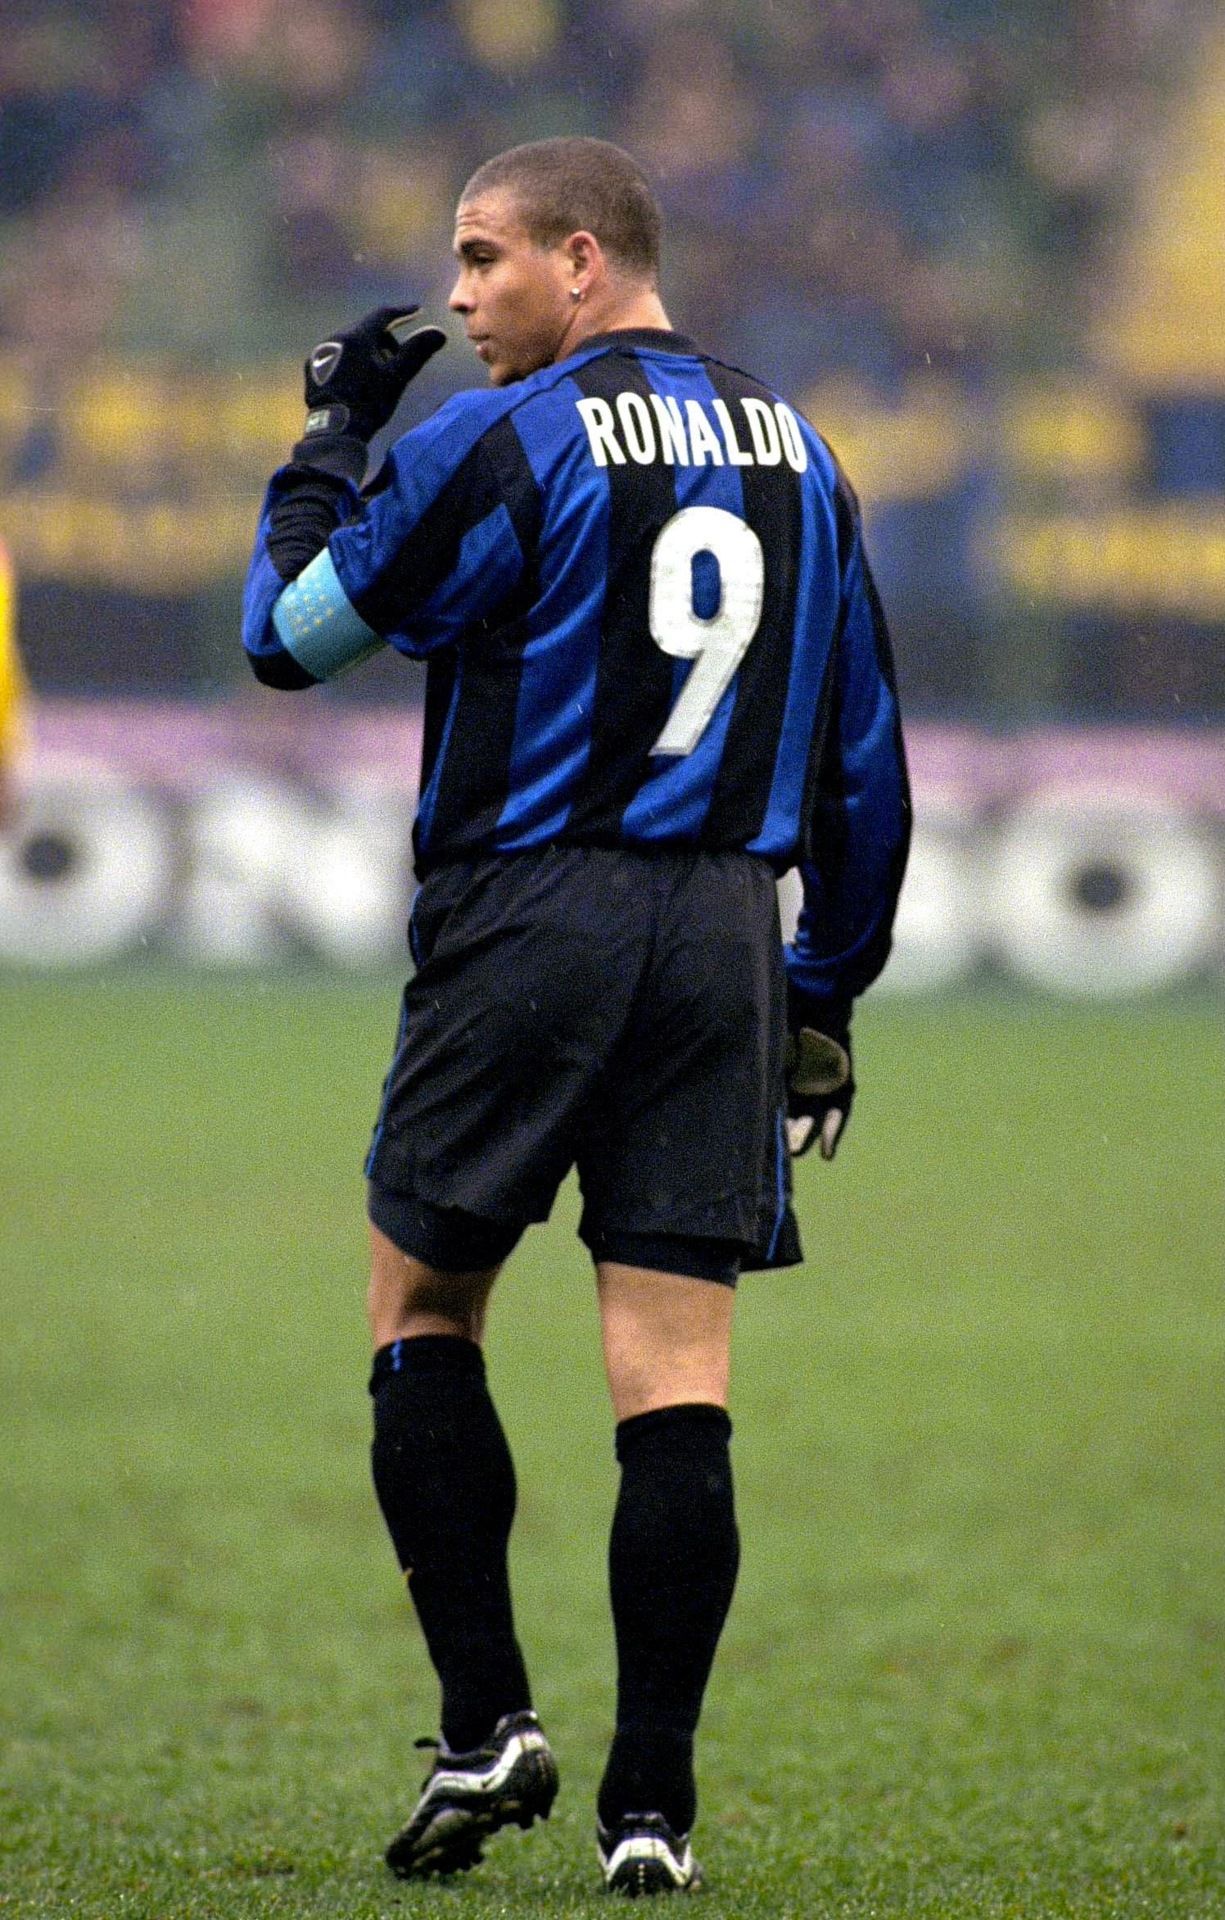 Ronaldo inter milan. Ronaldo fenomeno, Fotografia de futebol